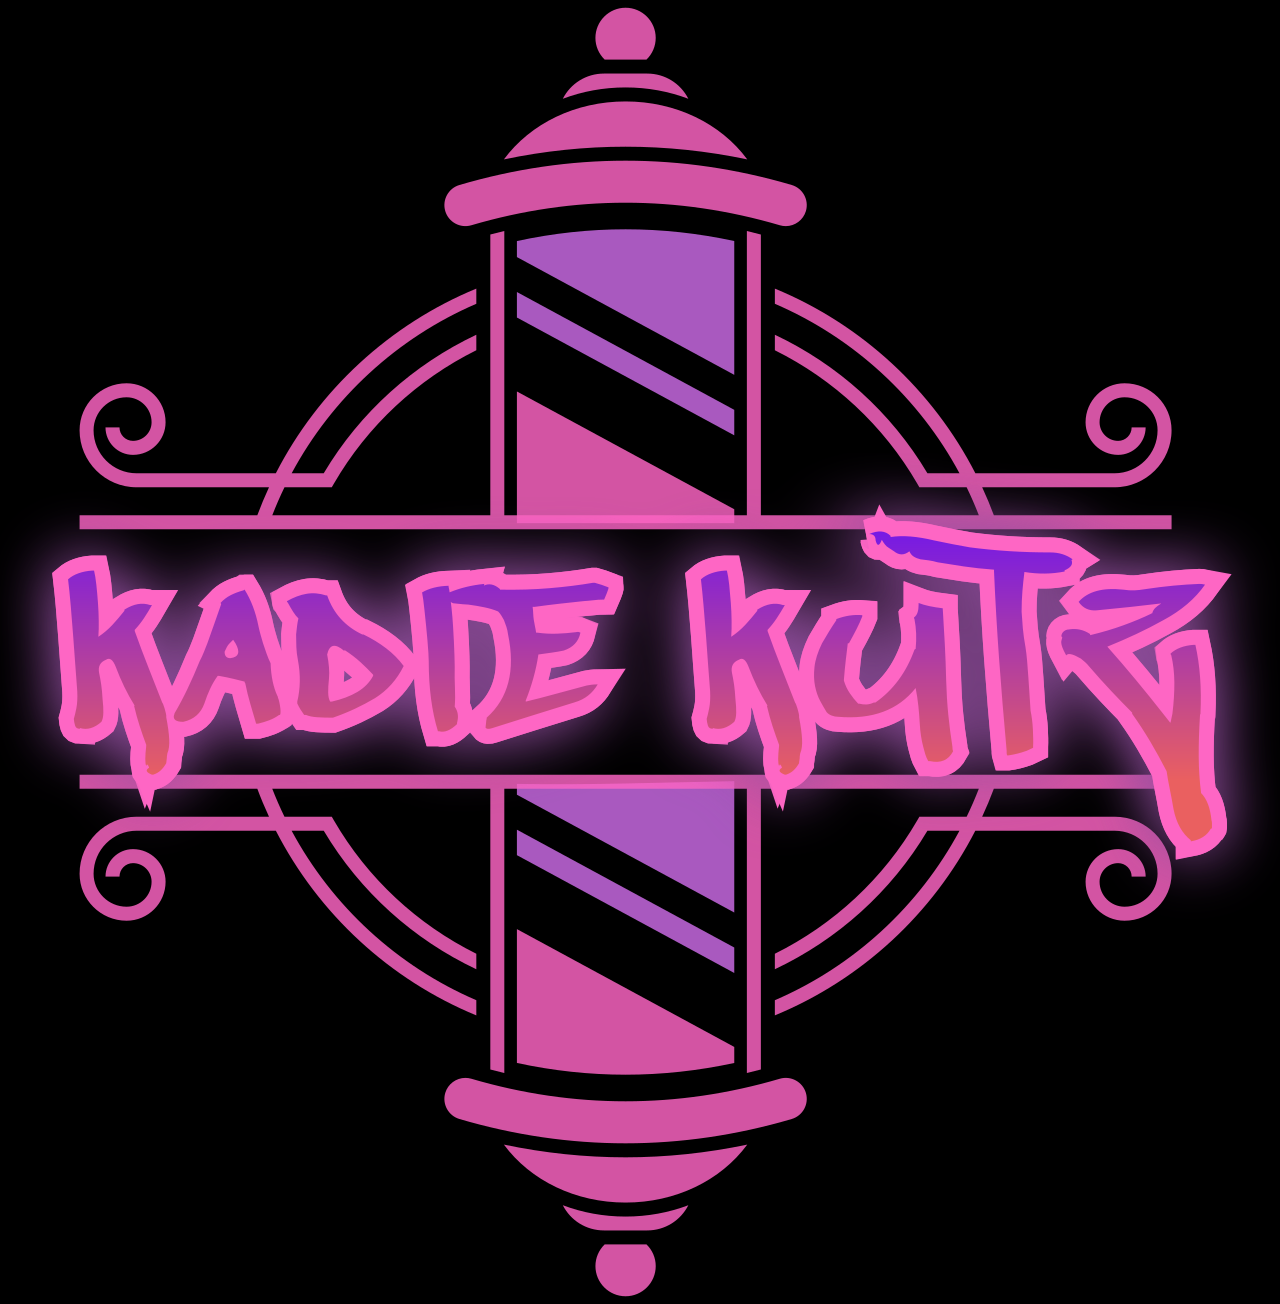 Kadie Kutz's web page